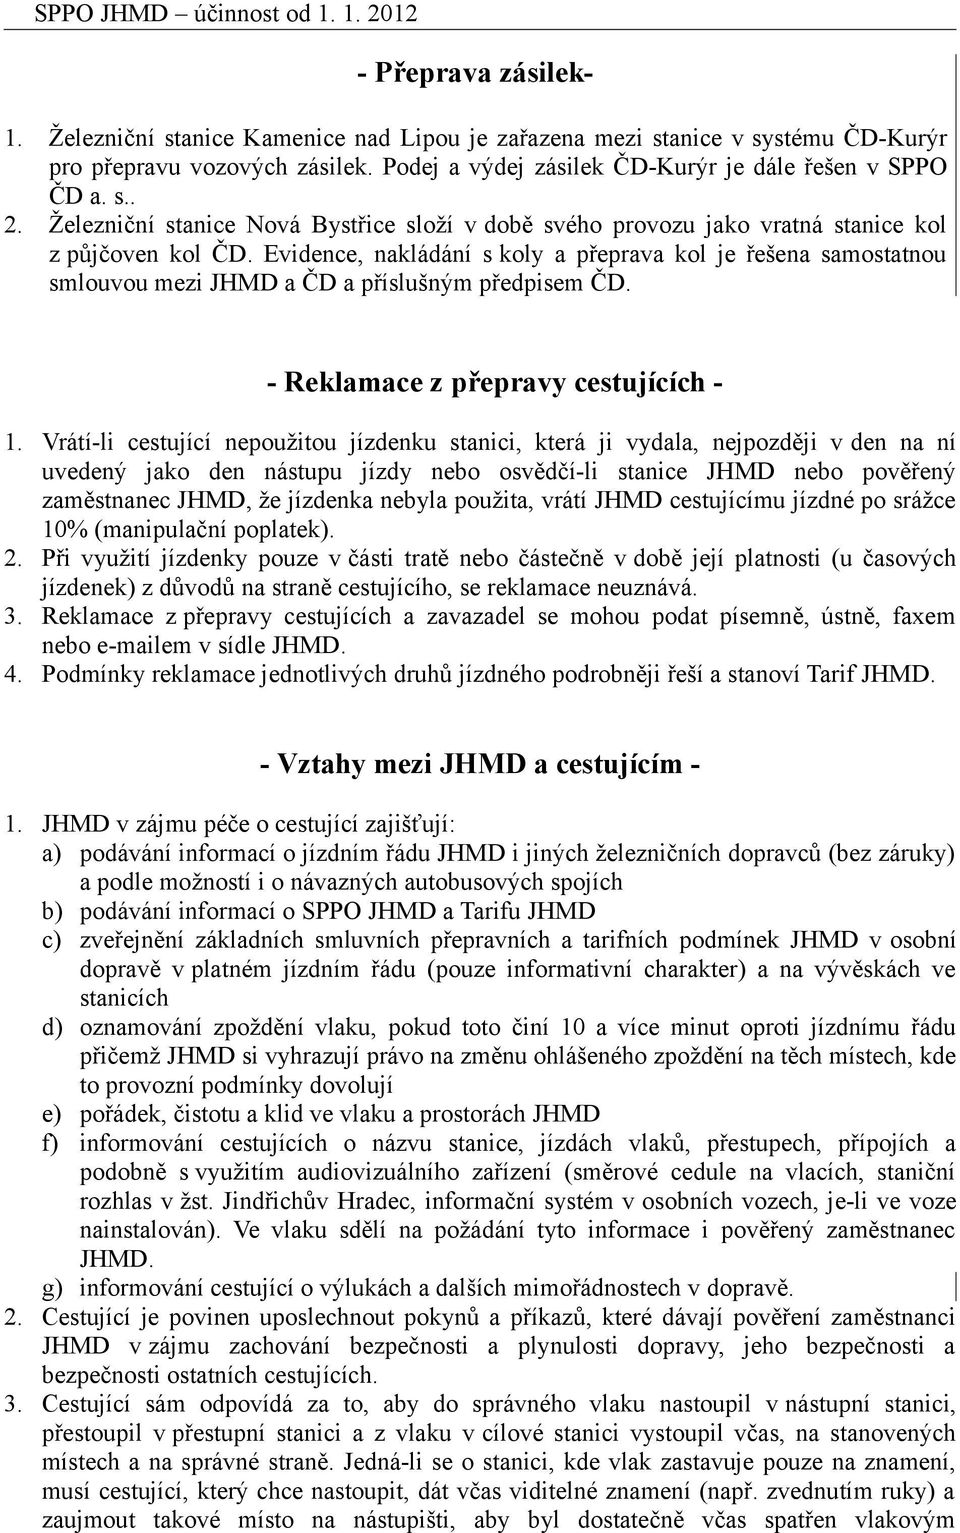 Evidence, nakládání s koly a přeprava kol je řešena samostatnou smlouvou mezi JHMD a ČD a příslušným předpisem ČD. - Reklamace z přepravy cestujících - 1.